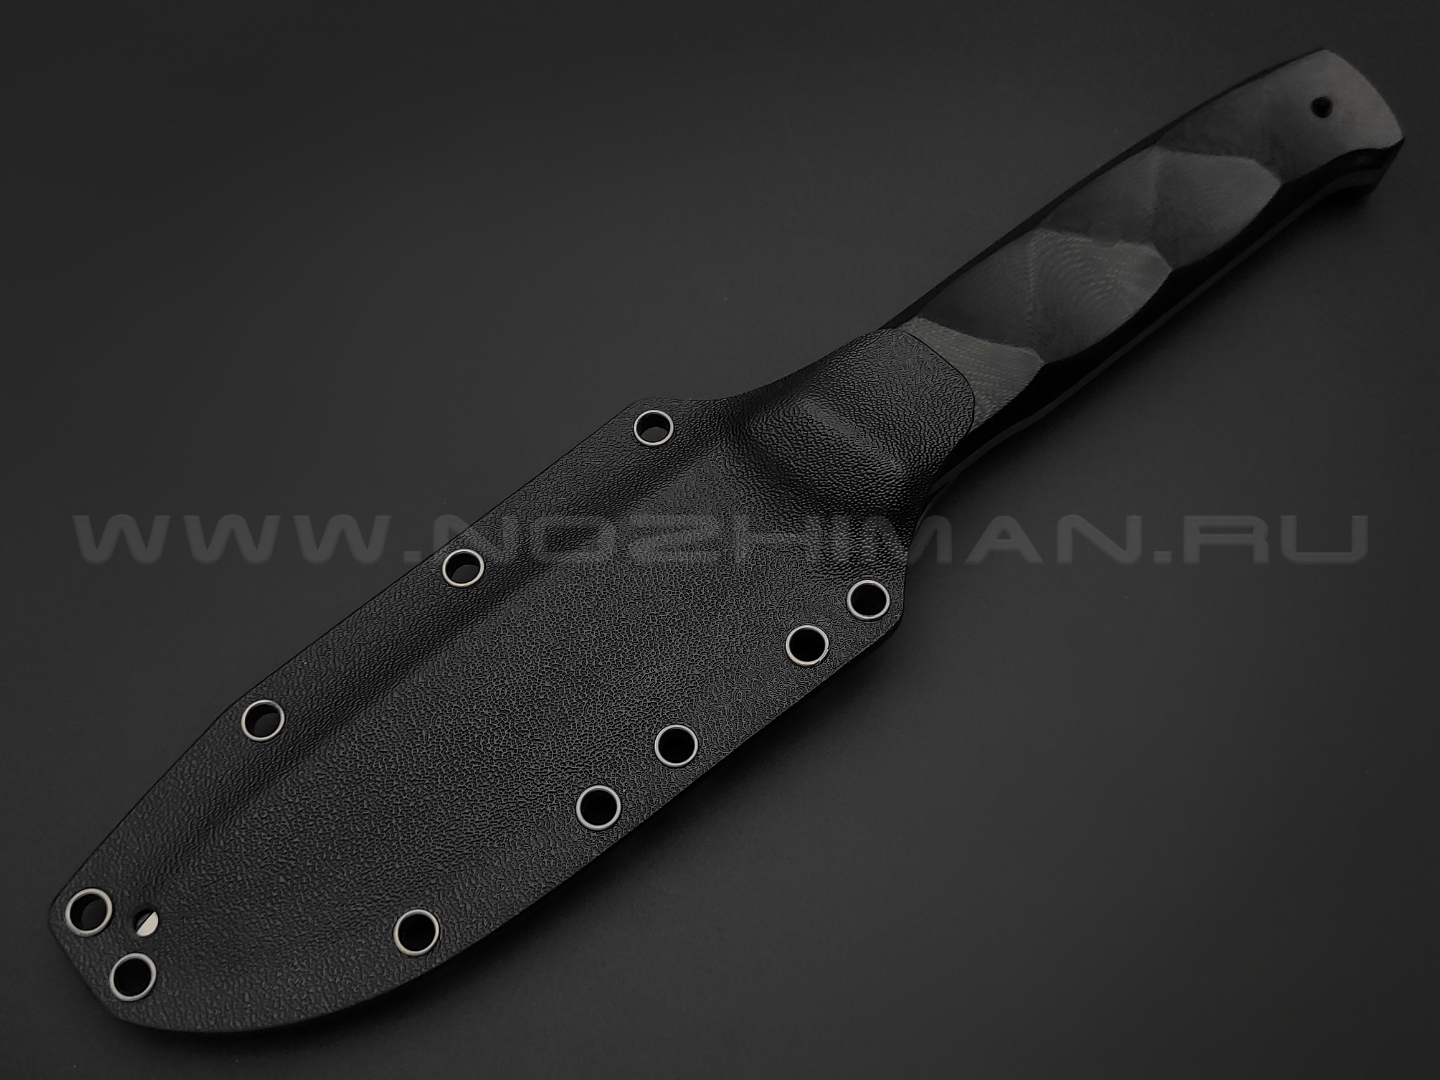 Волчий Век нож Wolfkniven сталь 95х18 WA satin, рукоять G10 black